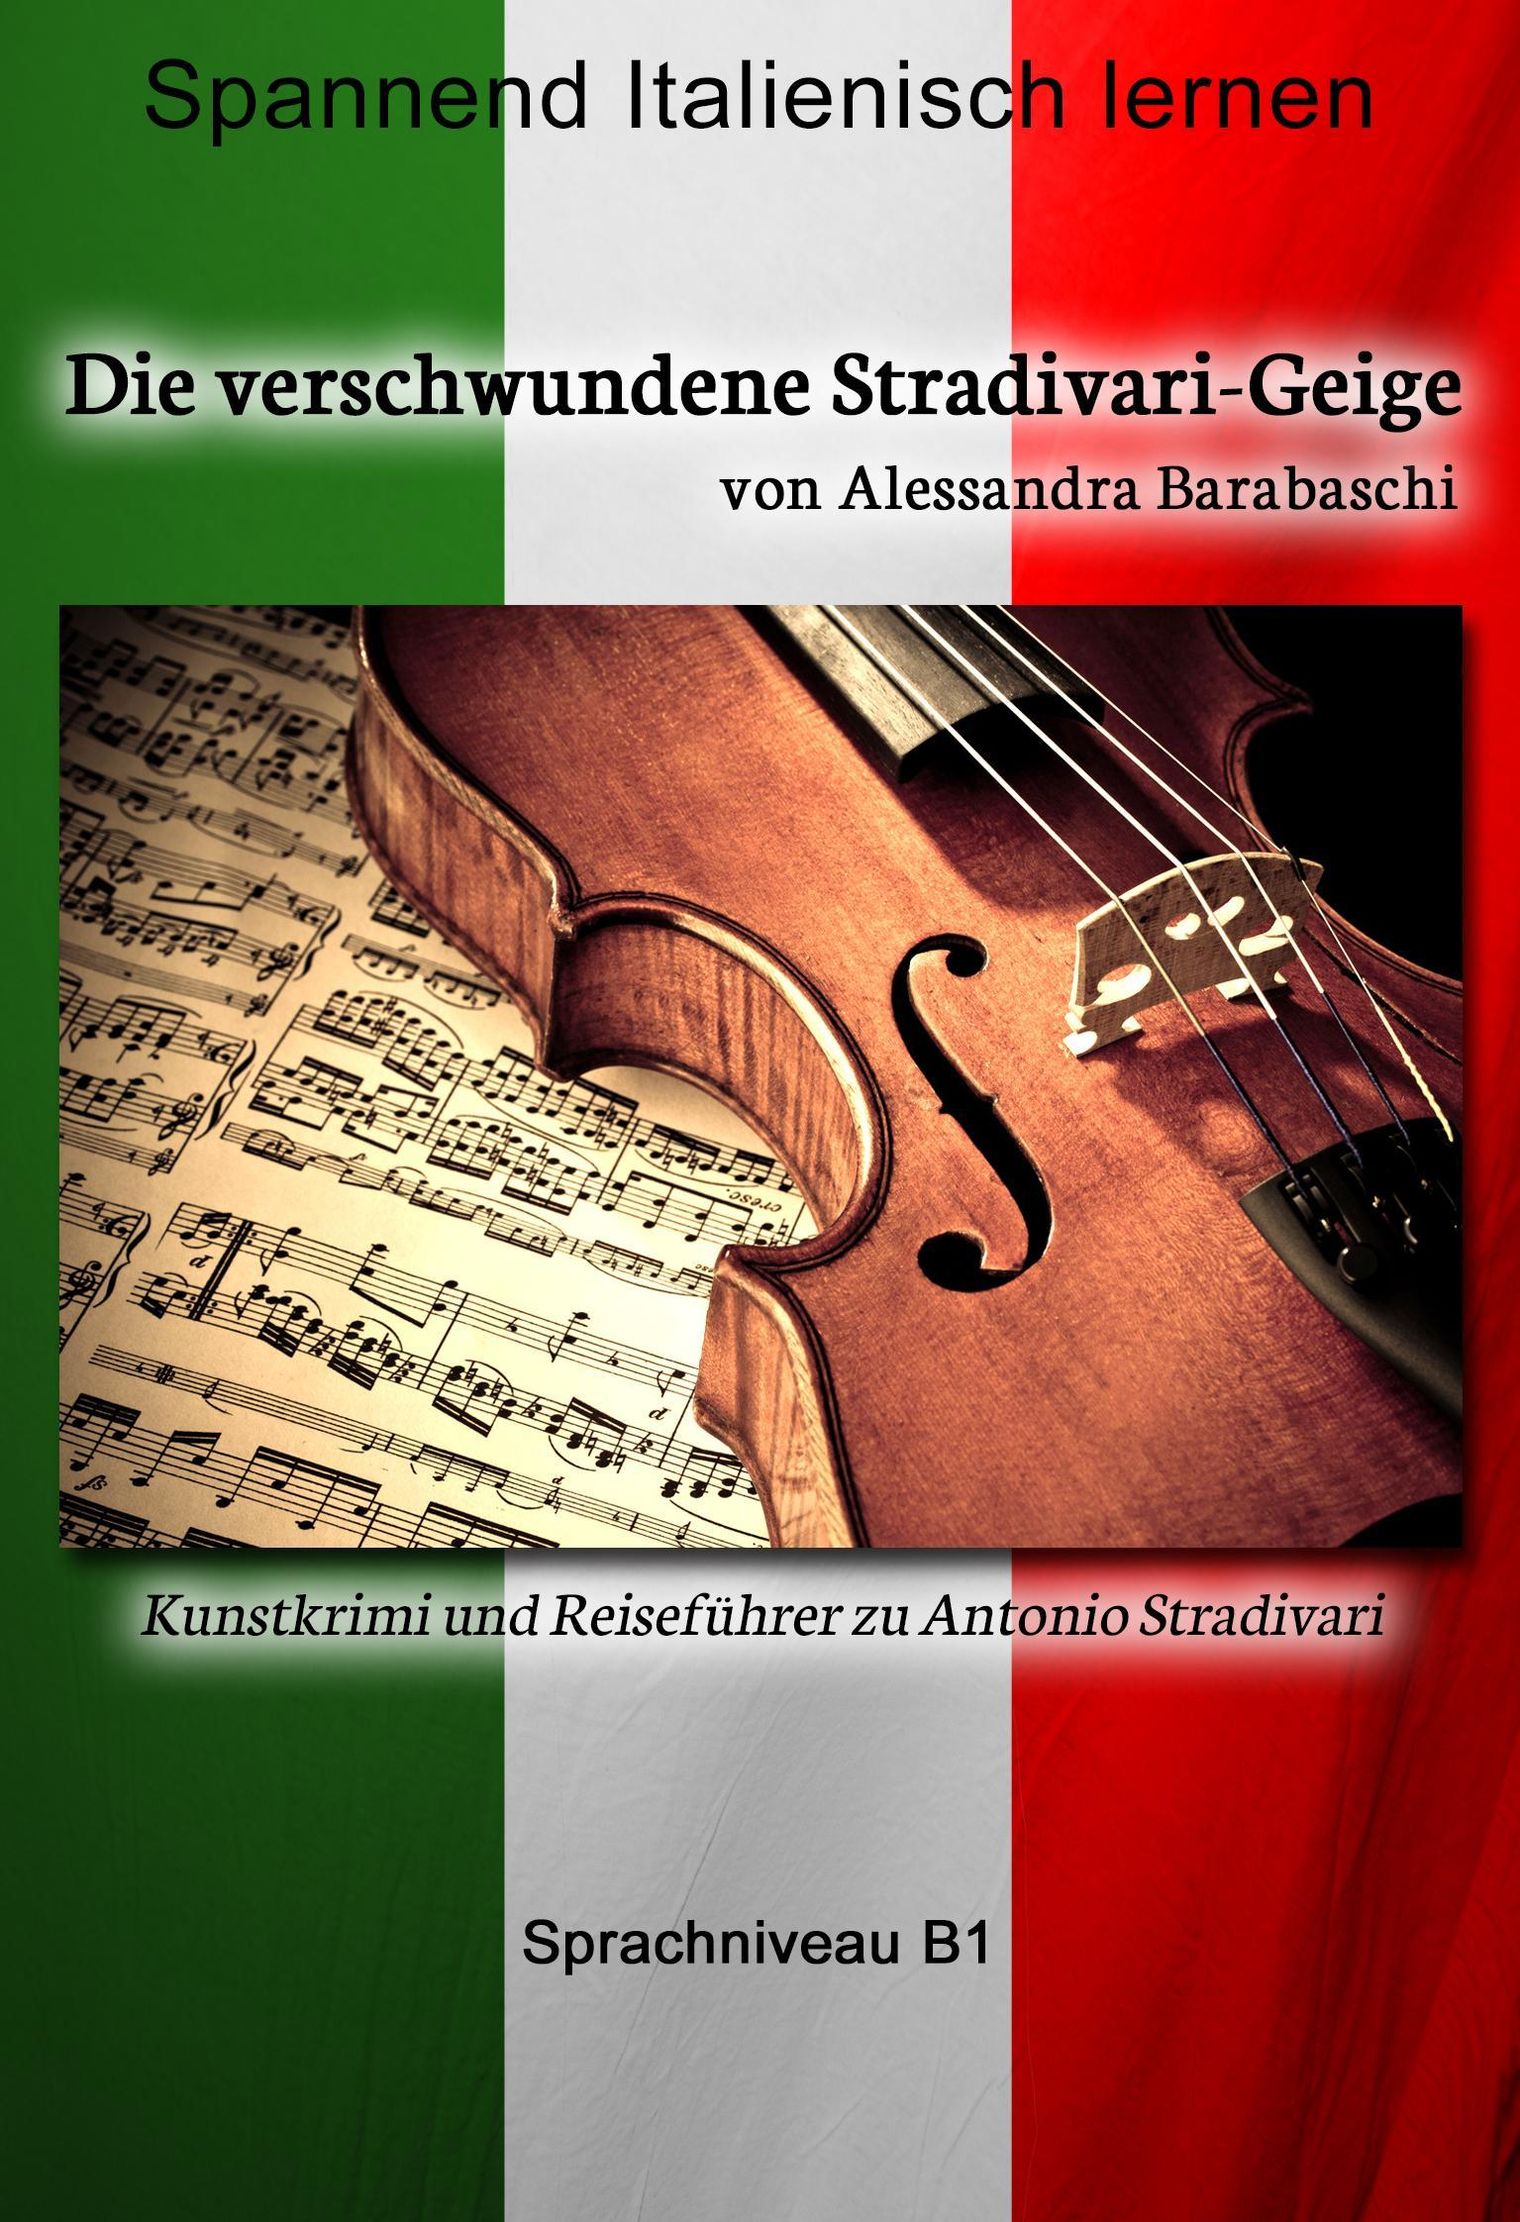 Die verschwundene Stradivari-Geige - Sprachkurs Italienisch-Deutsch B1  Sprachkurs Italienisch-Deutsch eBook v. Alessandra Barabaschi | Weltbild